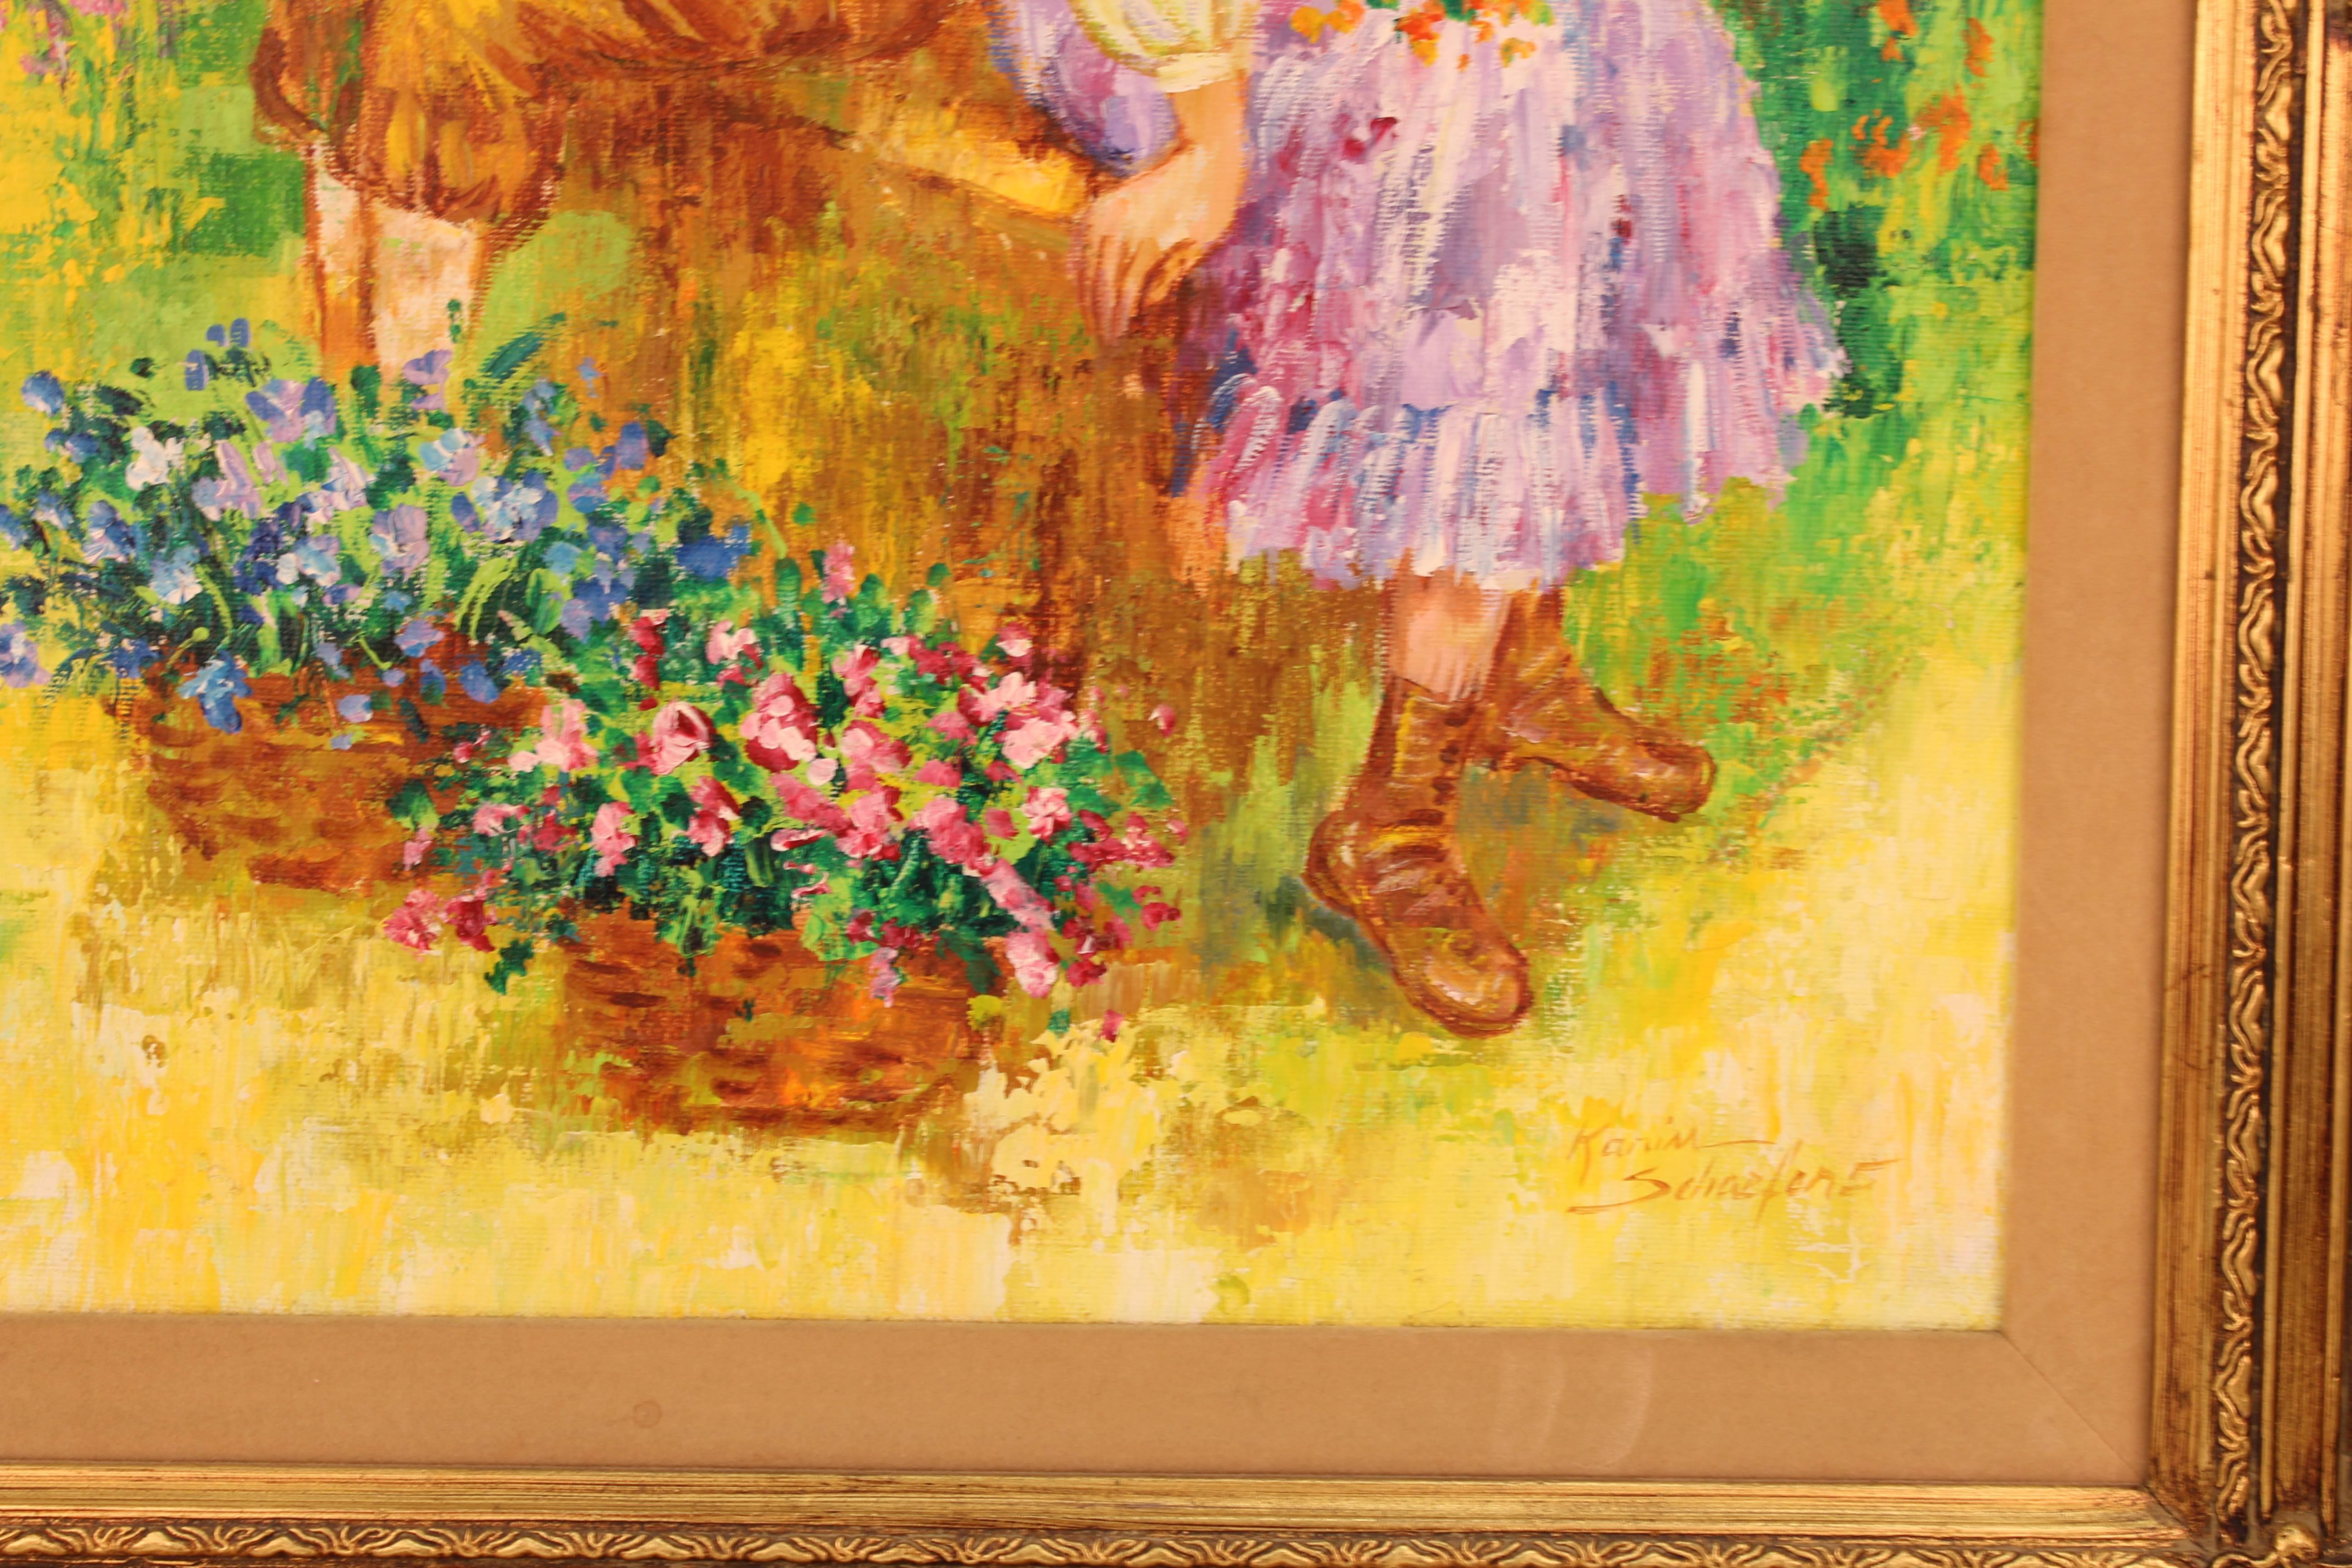  Peinture intitulée « Children Holding Flowers in a Field » (enfants tenant des fleurs dans un champ) de Karin Schaefers  Excellent état - En vente à New York, NY